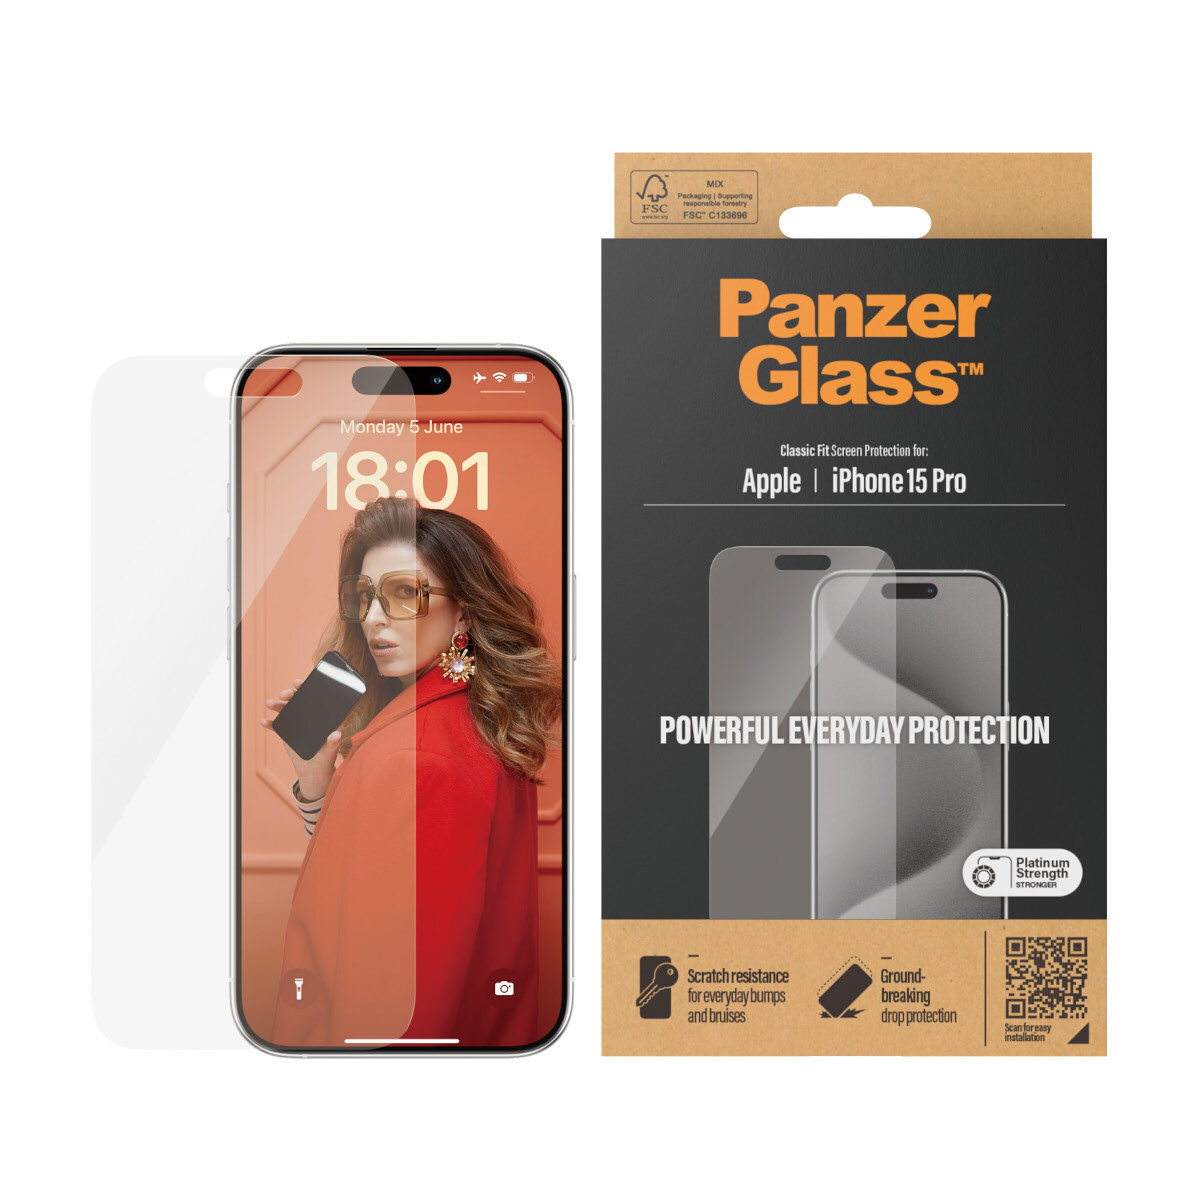 Szkło hartowane PanzerGlass Classic Fit iPhone15 Pro widoczne opakowanie oraz telefon z przyłożonym szkłem